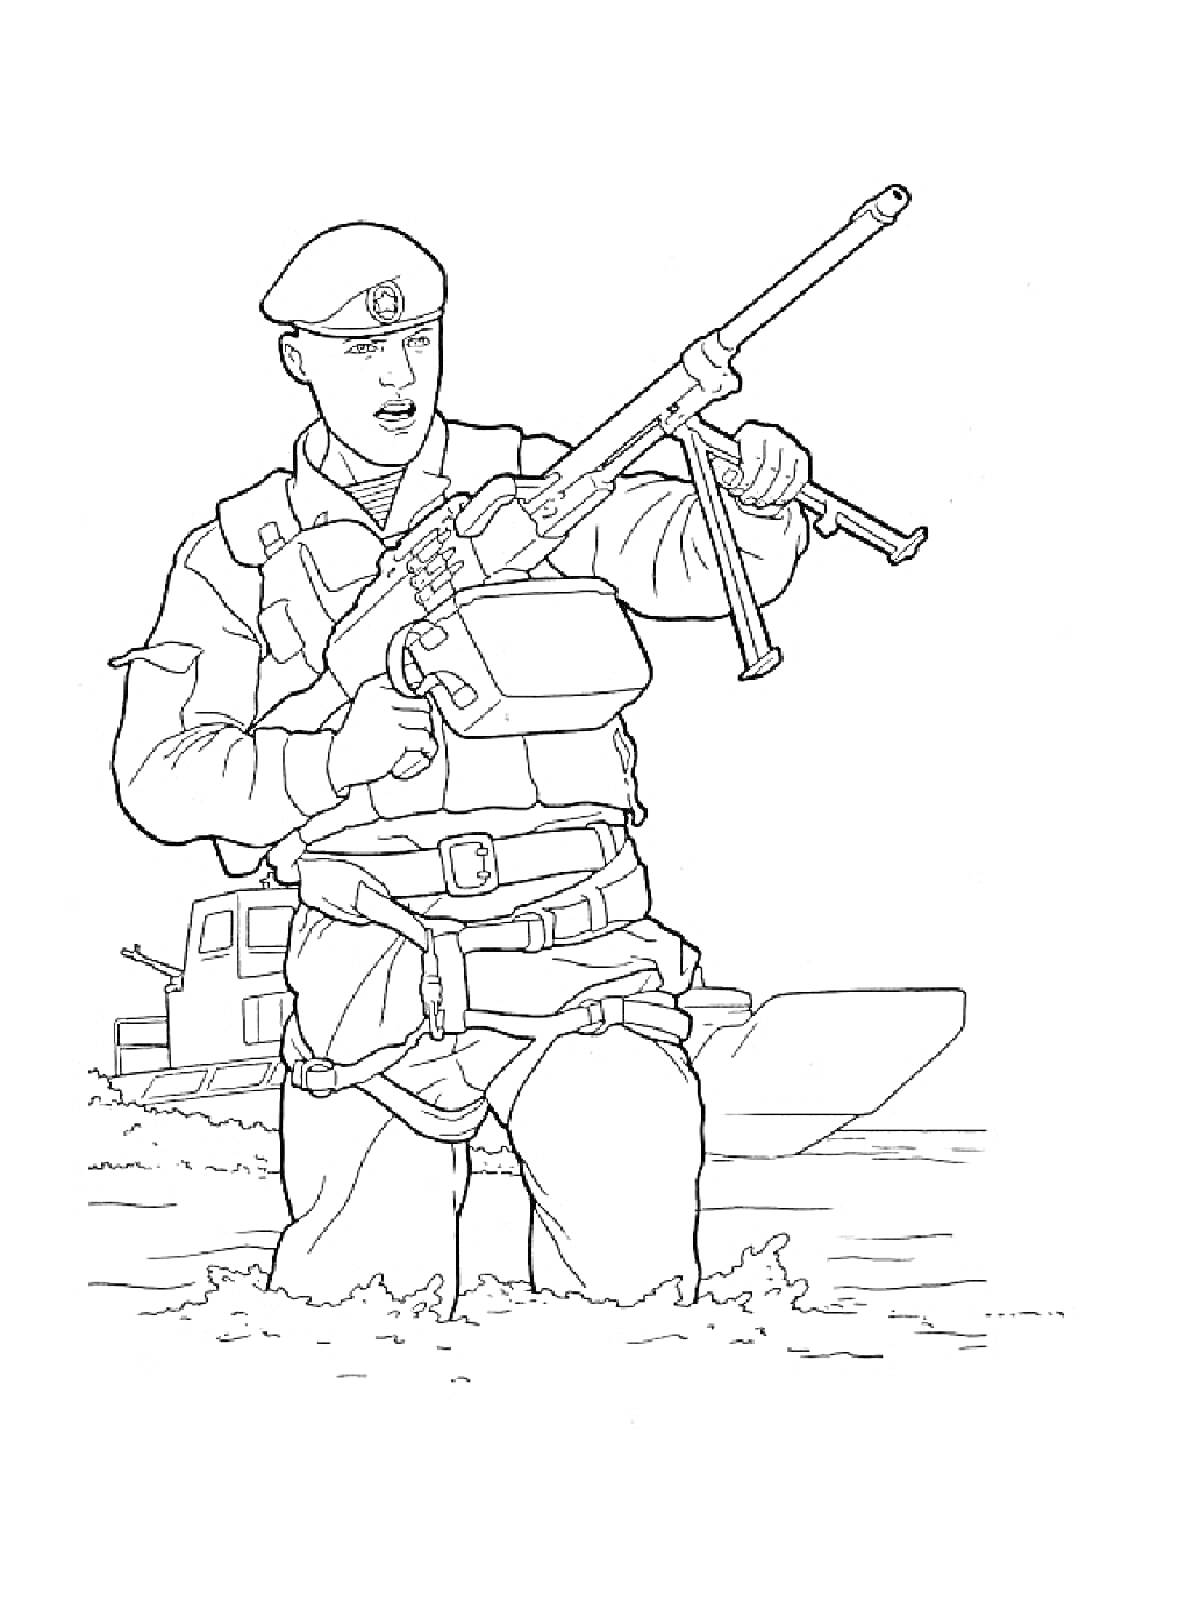 Солдат с оружием, по пояс в воде, корабль на заднем плане